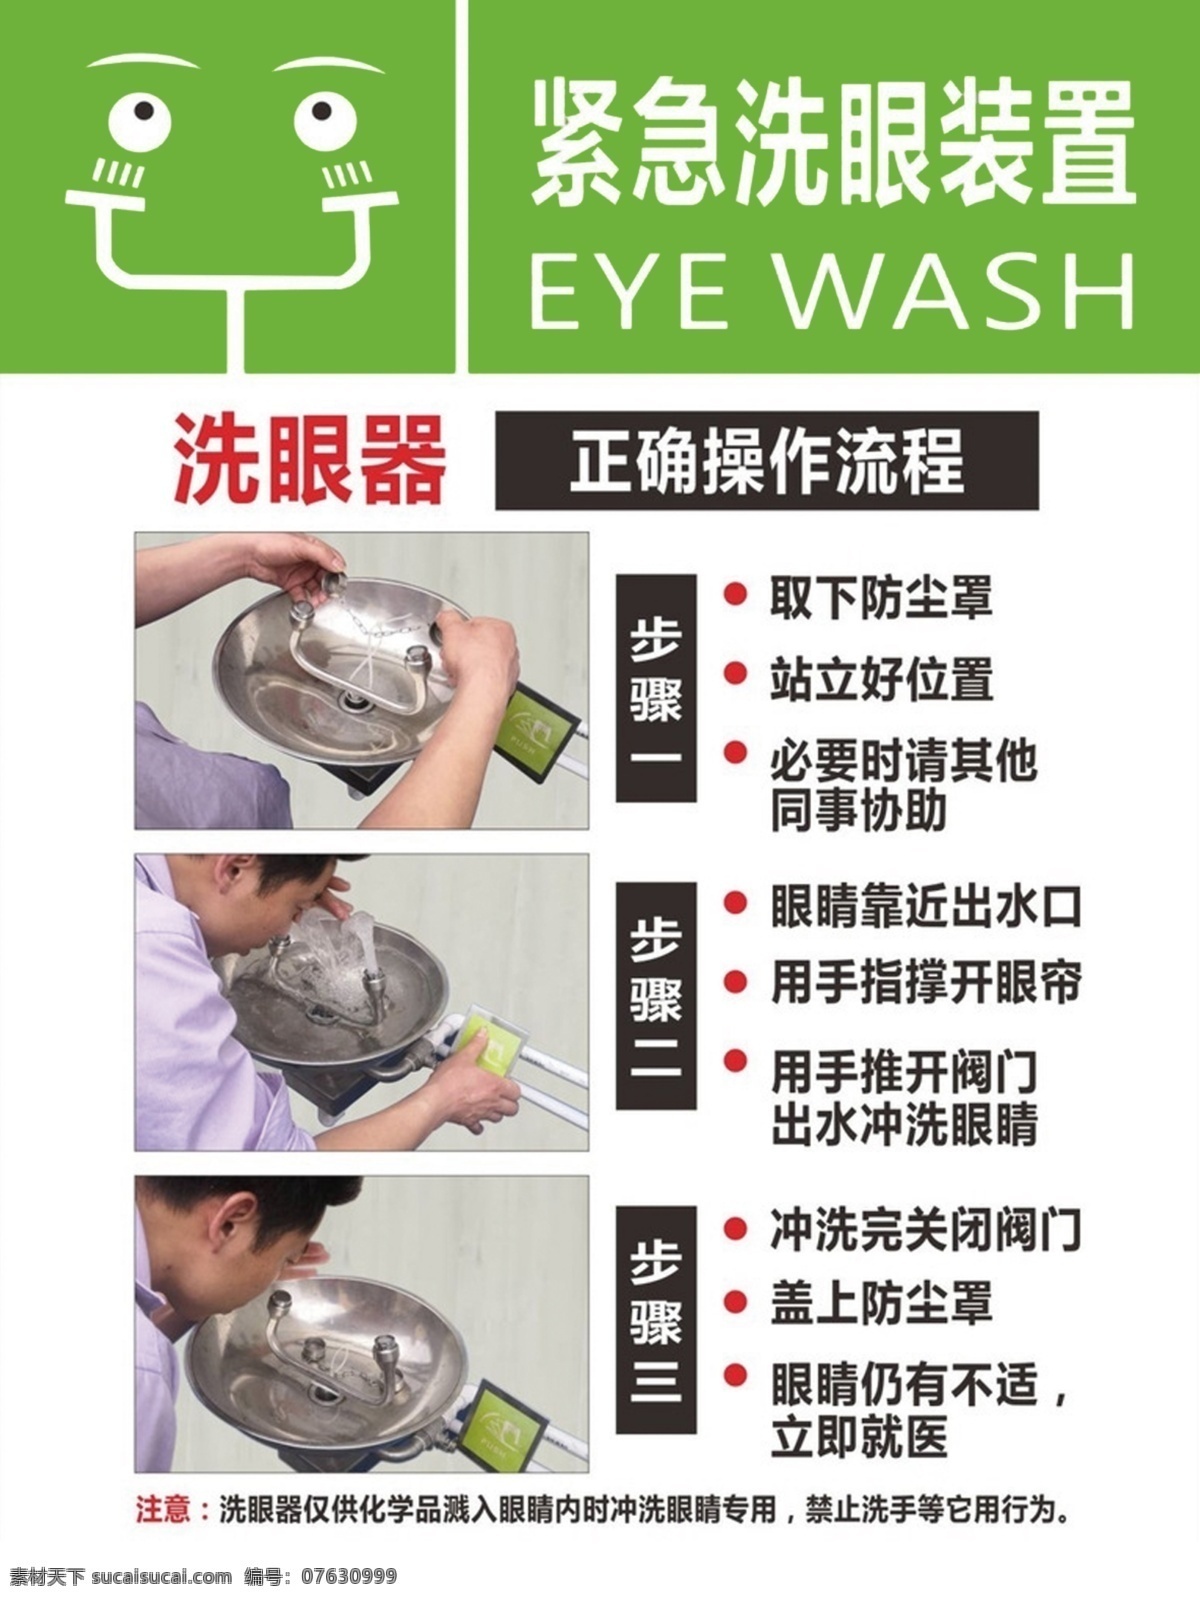 洗眼 洗眼步骤 洗眼图解 洗眼器 紧急洗眼装置 展板模板